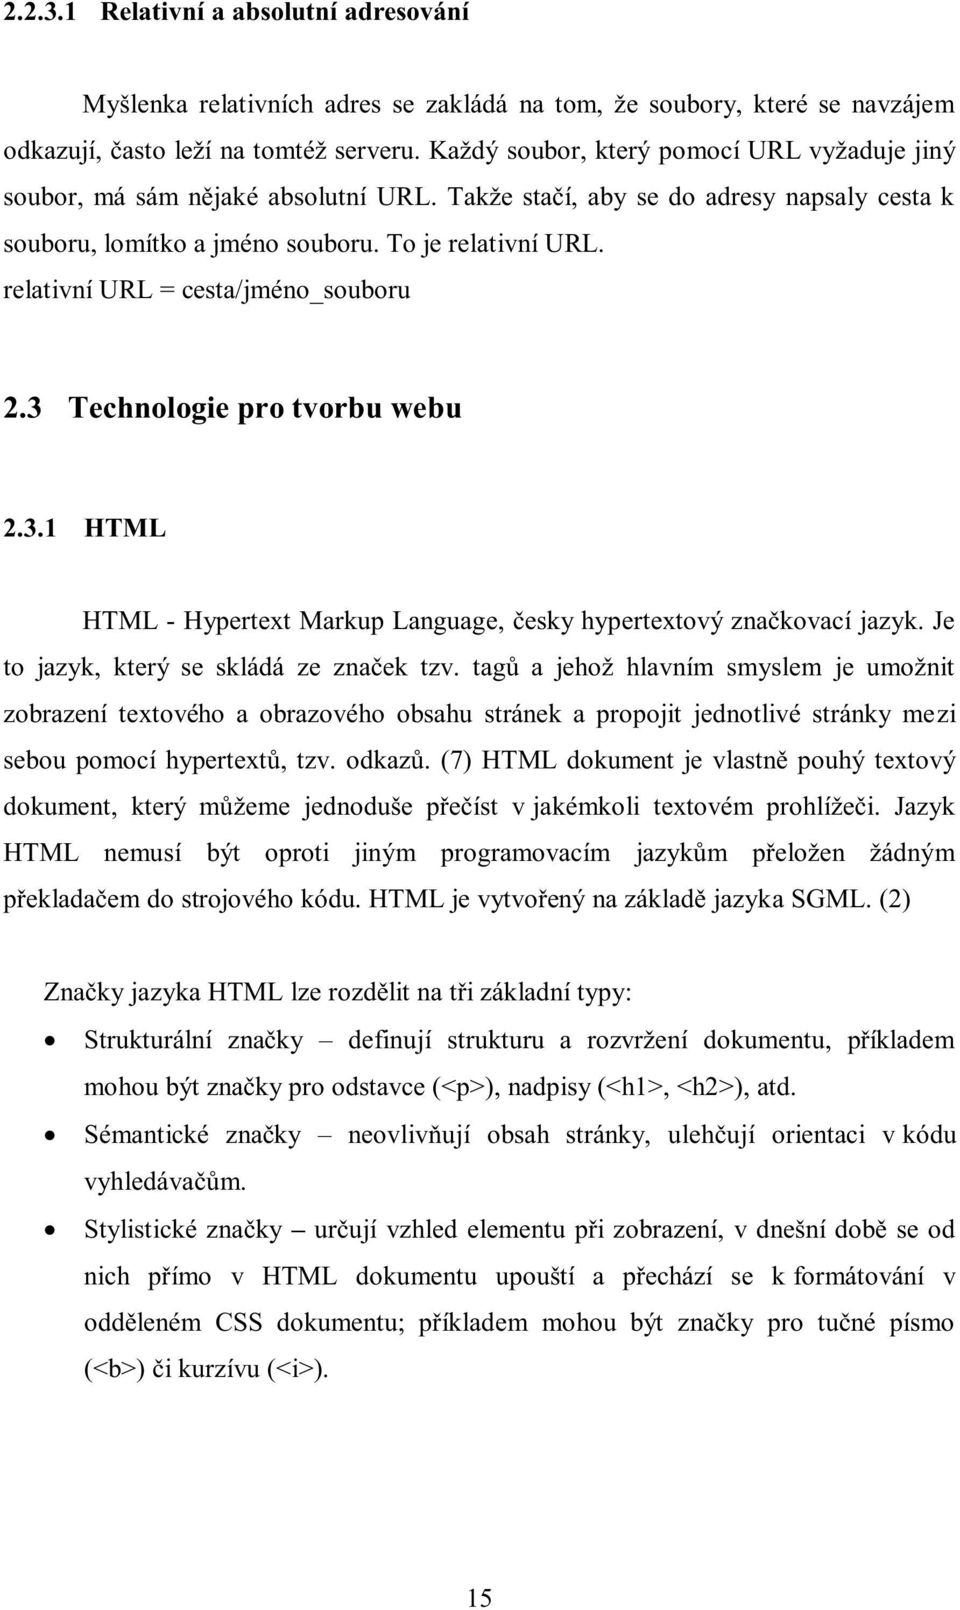 relativní URL = cesta/jméno_souboru 2.3 Technologie pro tvorbu webu 2.3.1 HTML HTML - Hypertext Markup Language, česky hypertextový značkovací jazyk. Je to jazyk, který se skládá ze značek tzv.